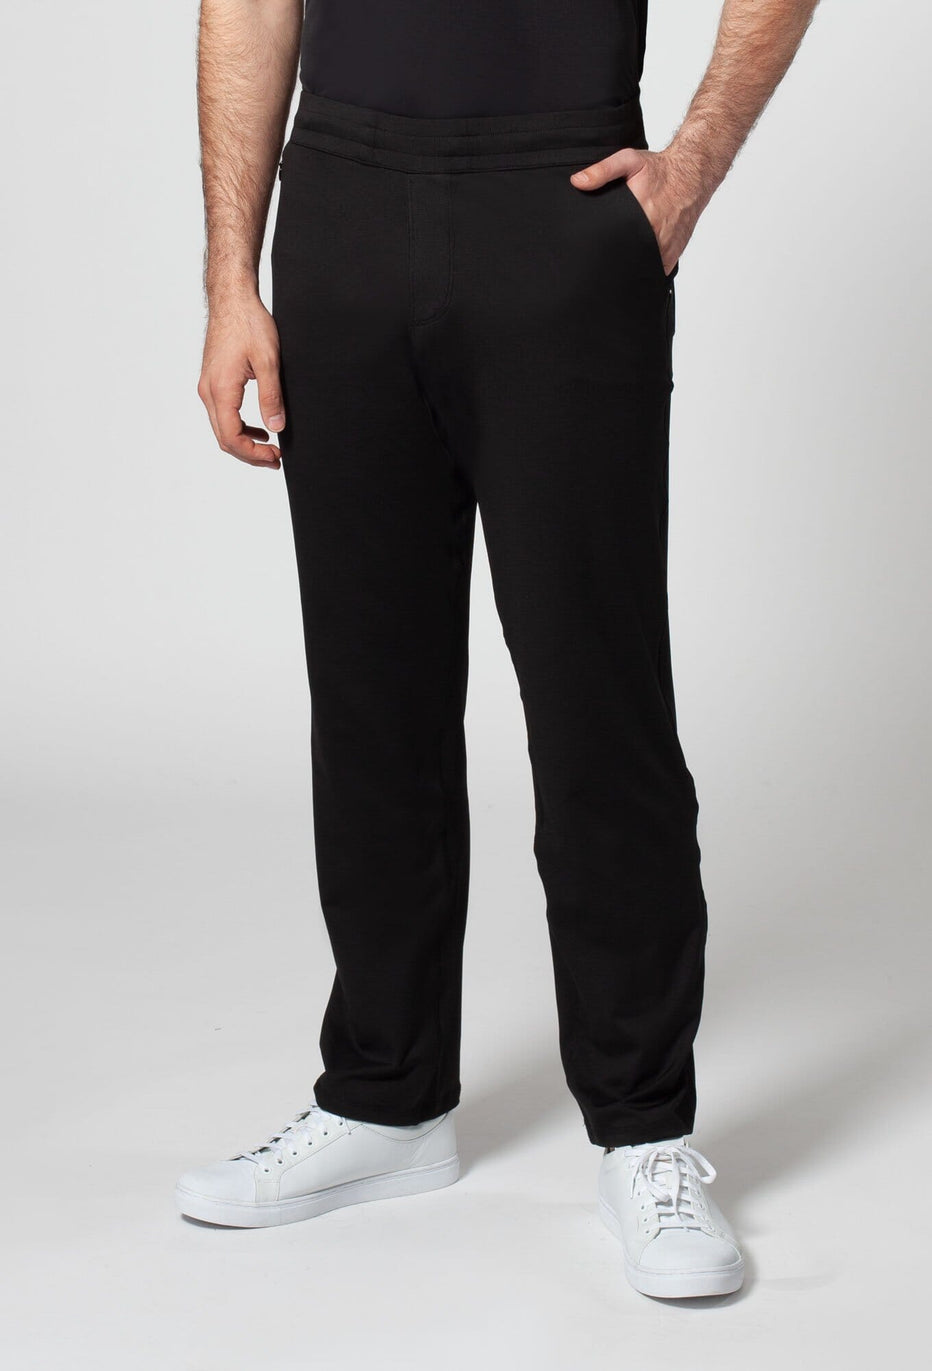 Men's Fitness Pants with Pockets#N#– Noel Asmar Uniforms